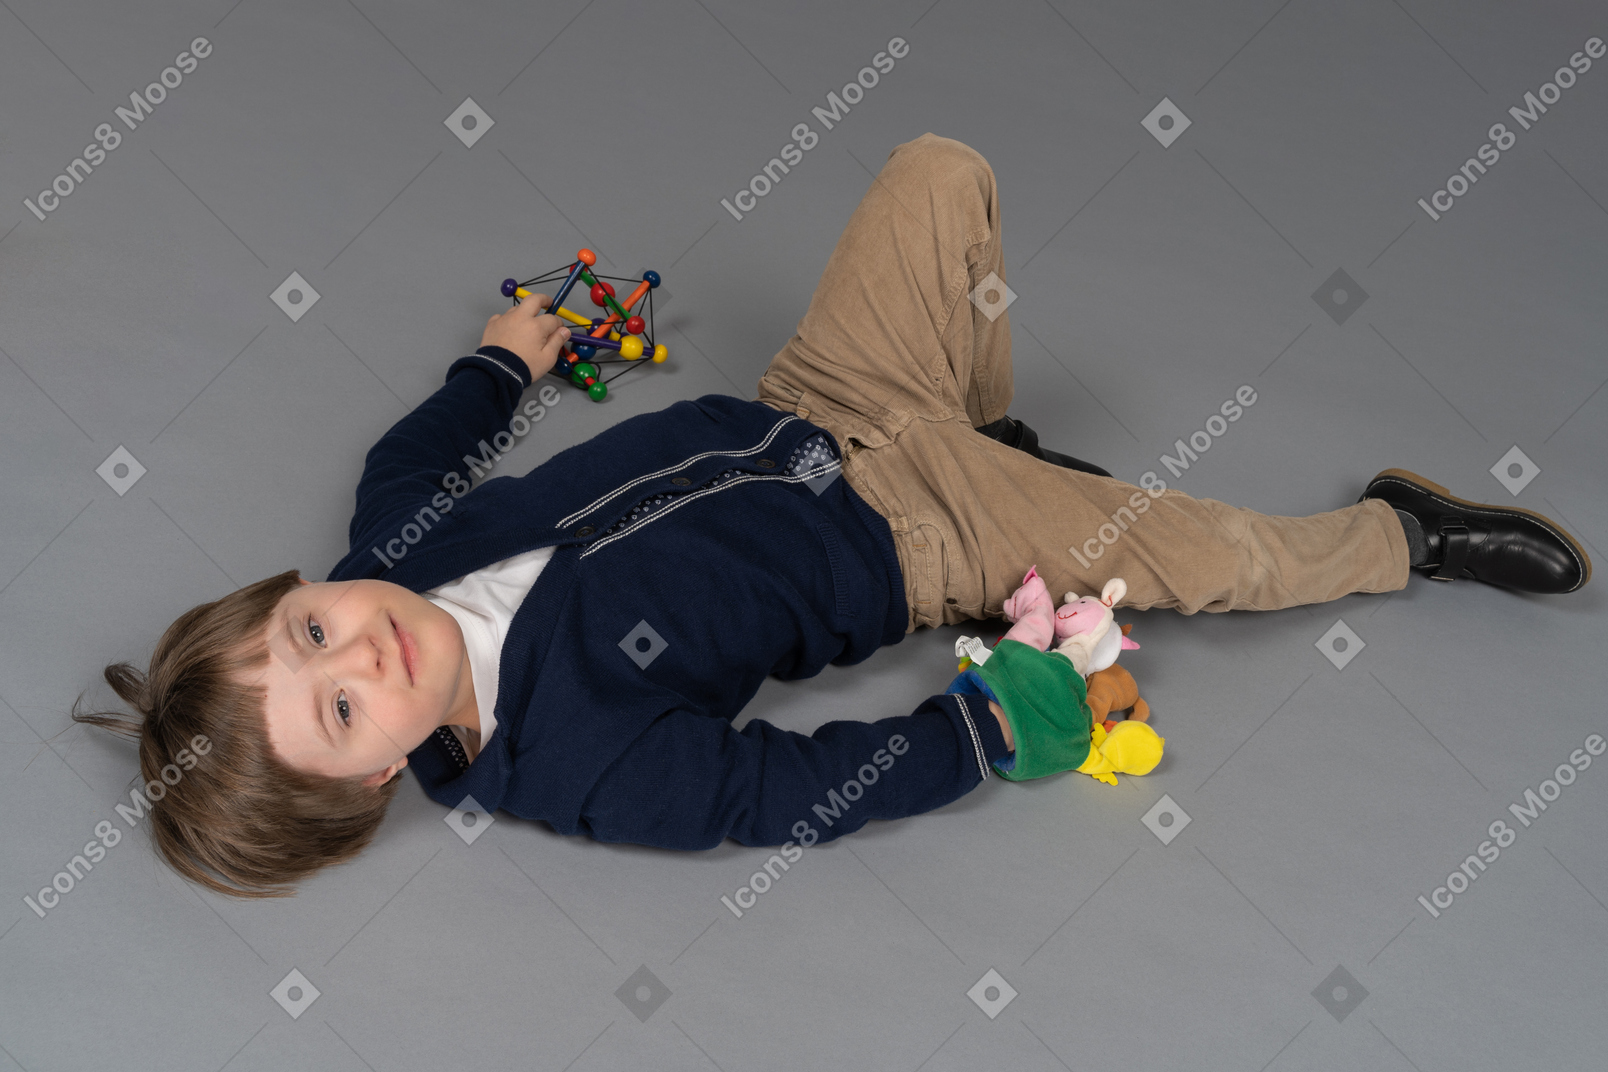 Alegre niño acostado con juguetes